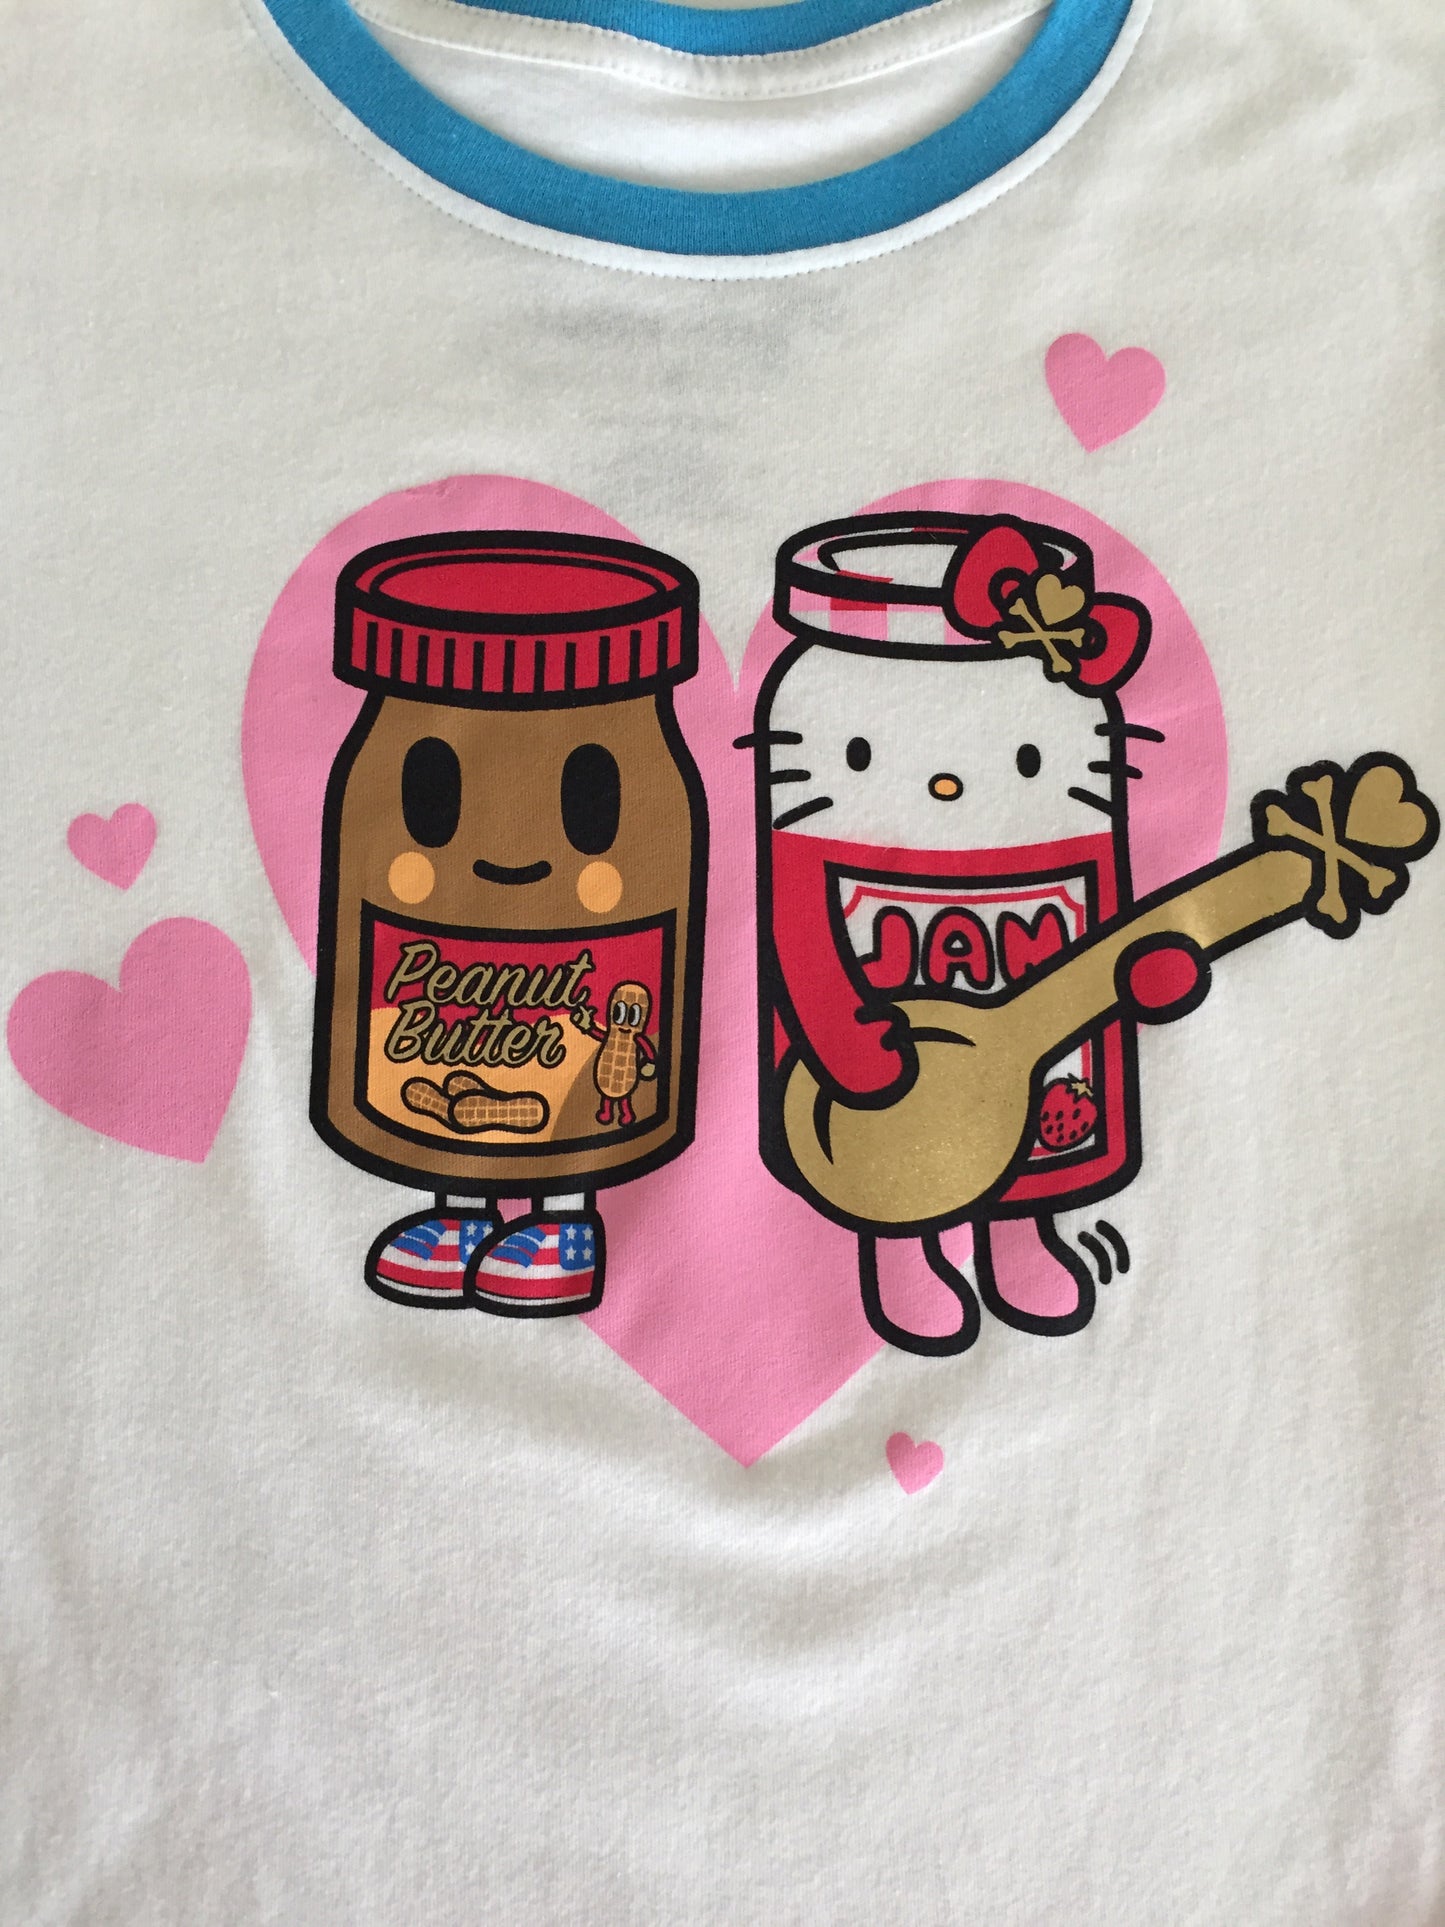 tokidoki x Hello Kitty - PB And Jam Women's Tee, White